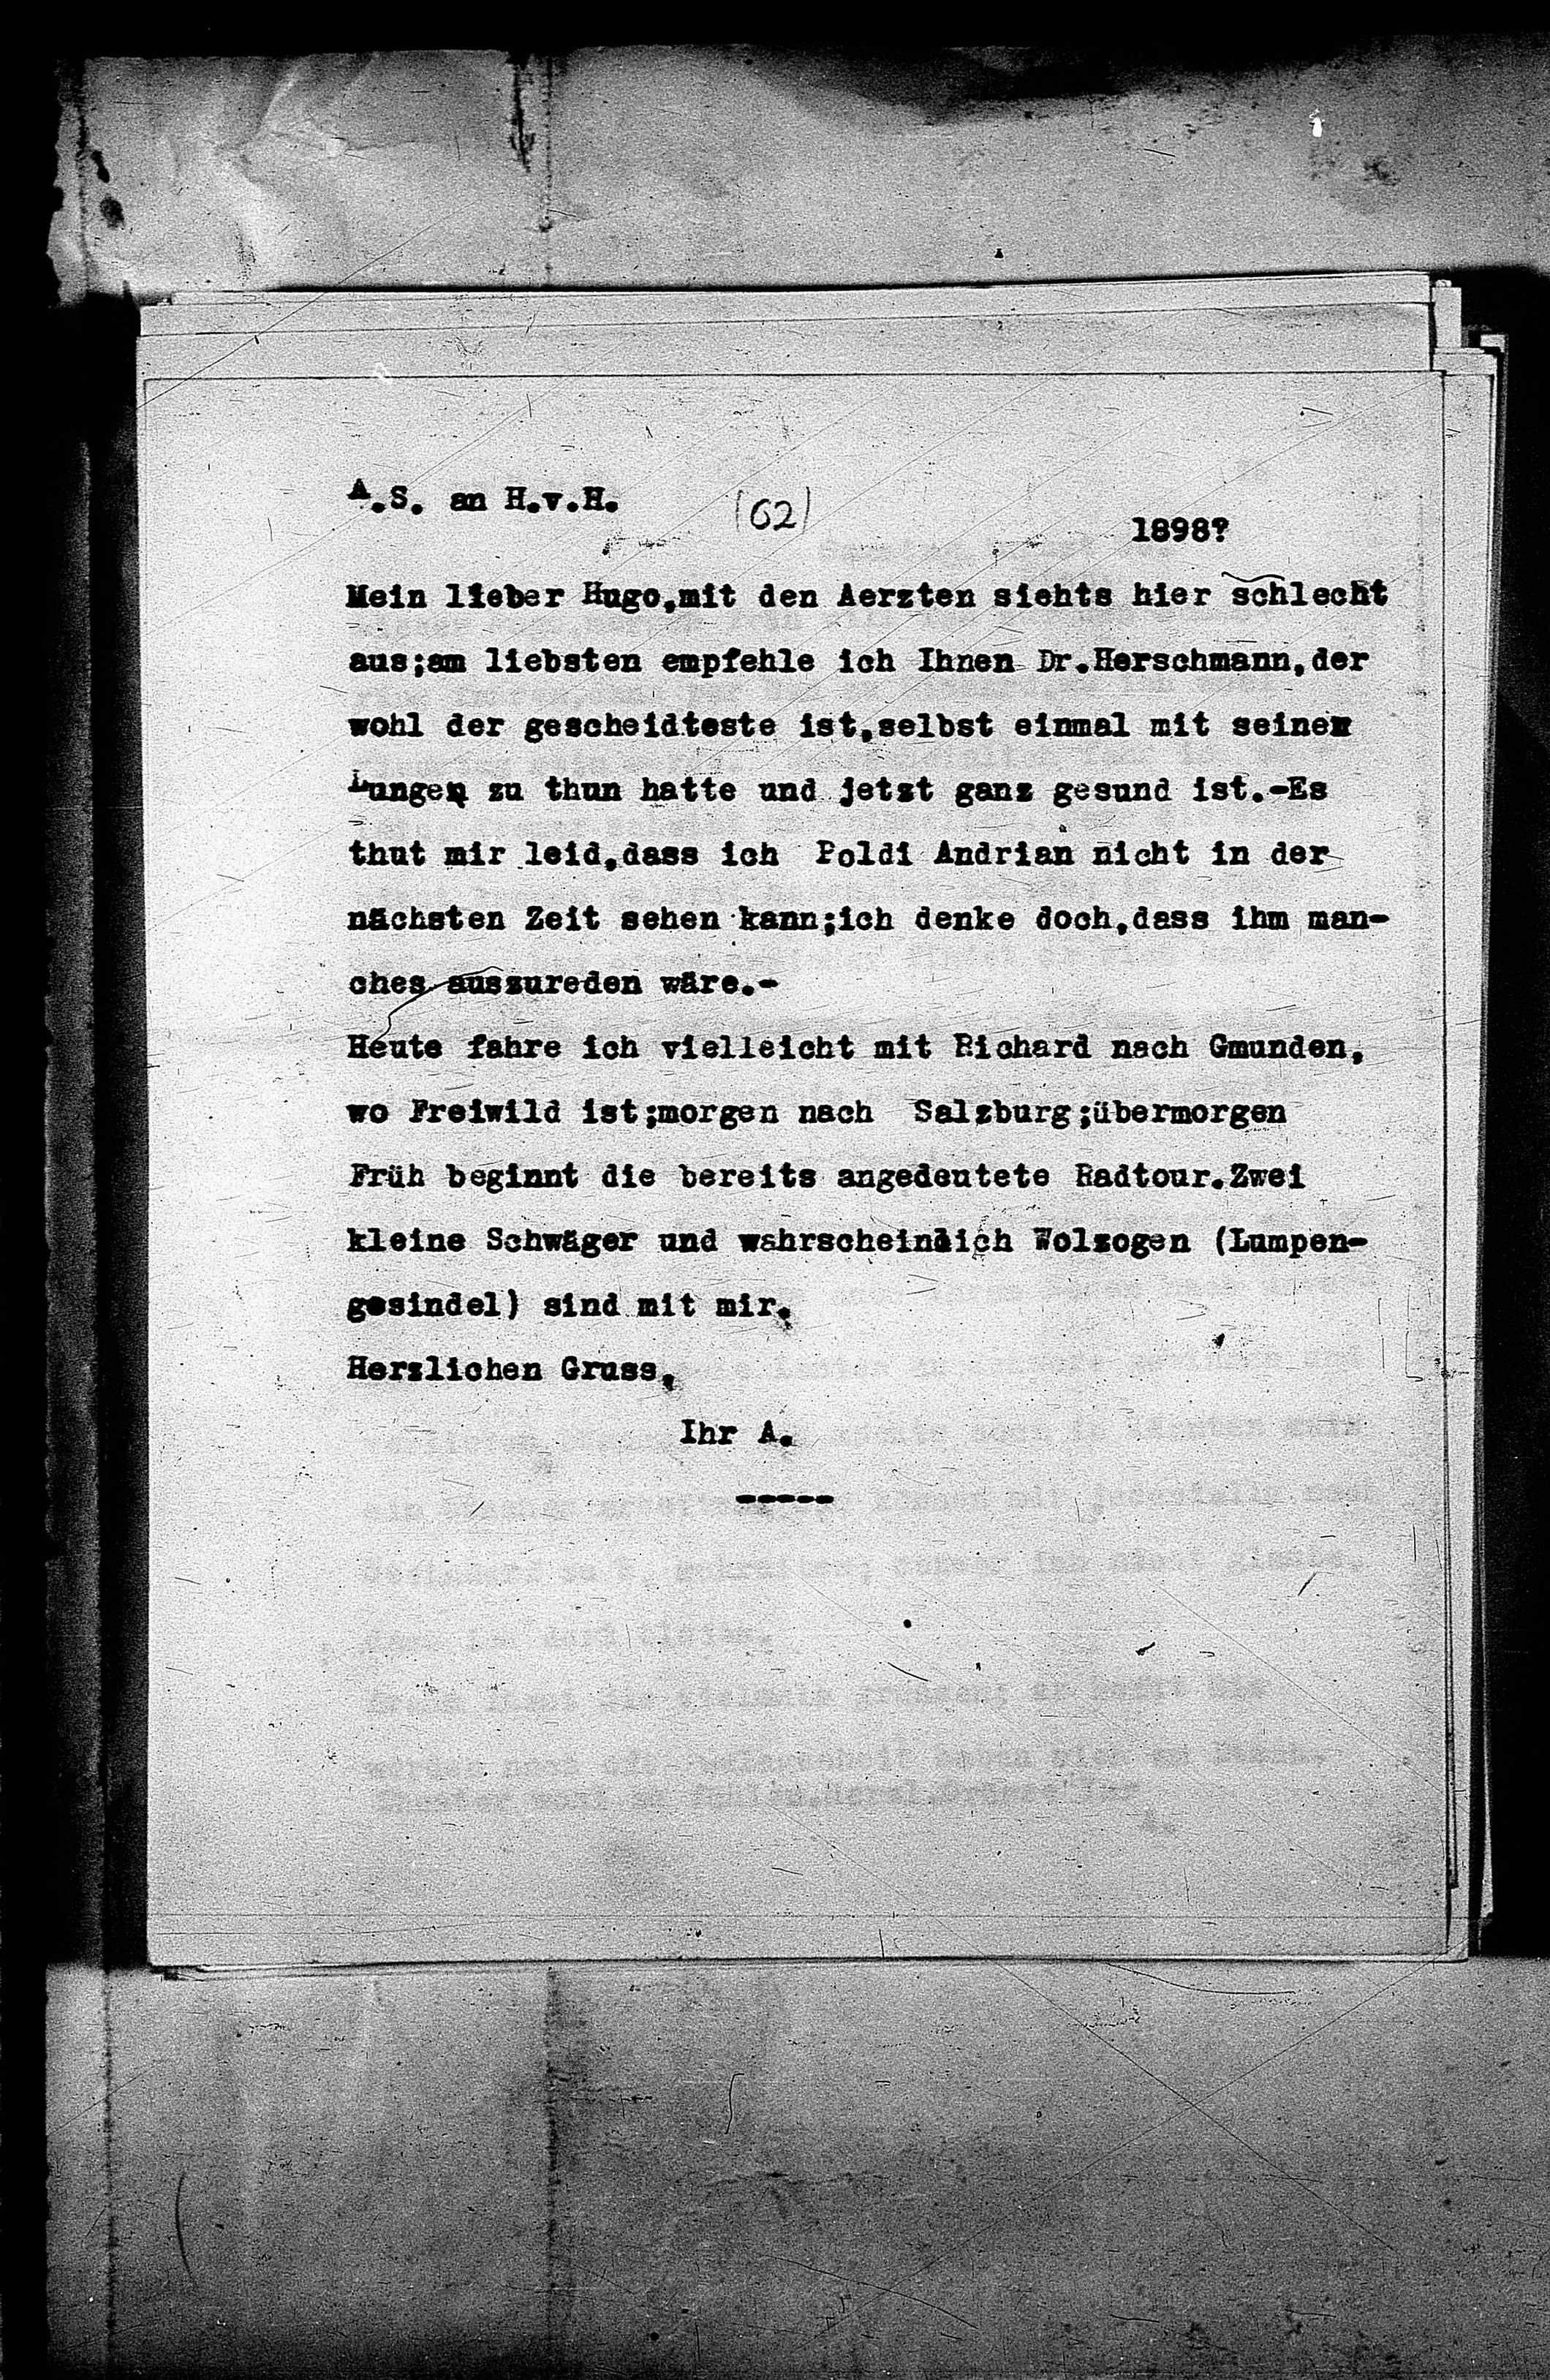 Vorschaubild für Hofmannsthal, Hugo von_AS an HvH Abschrift, HvH an AS, Originale (Mikrofilm 38), Seite 81